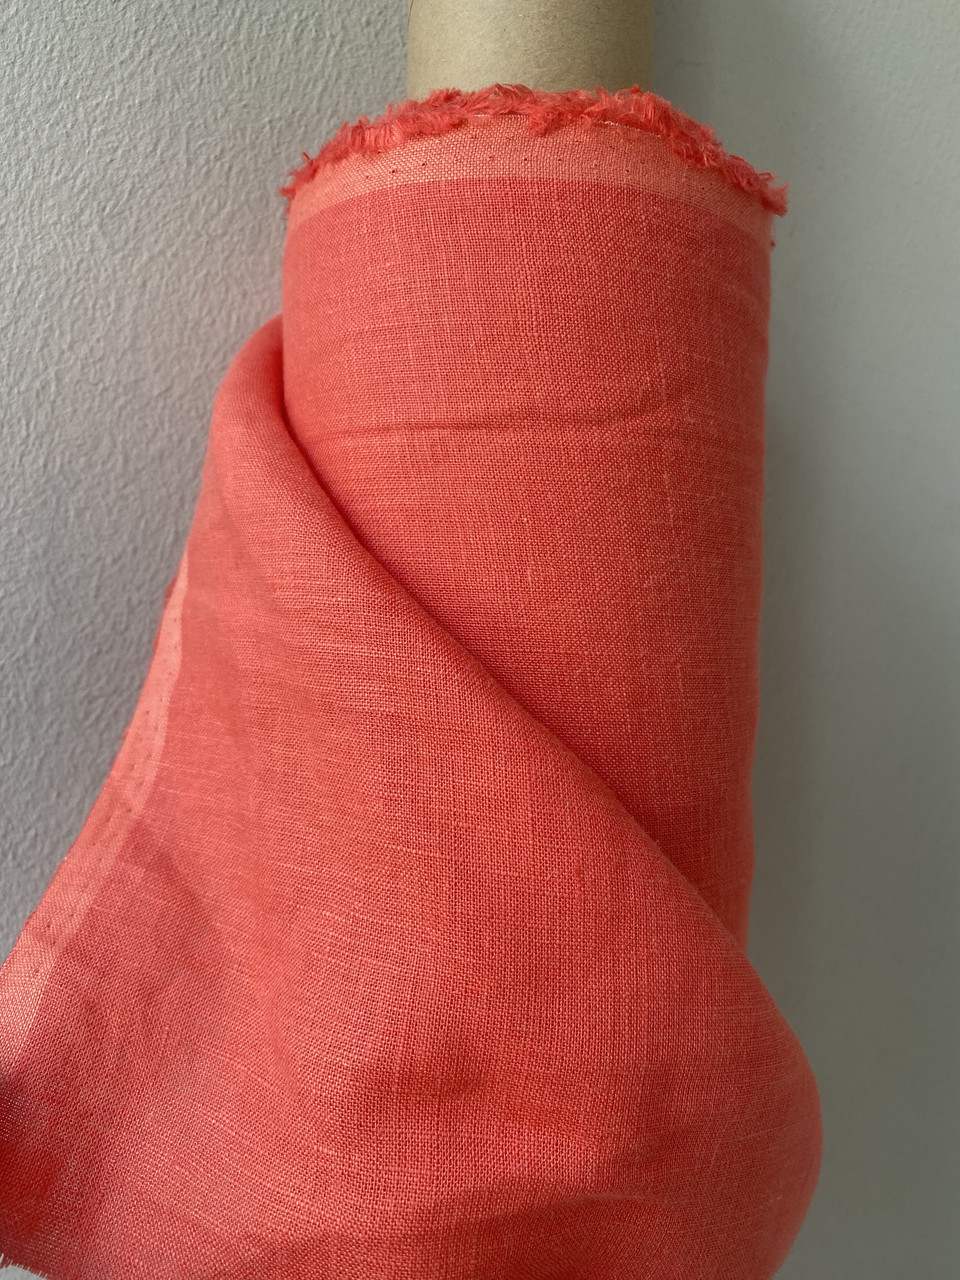 Коралова сорочкова лляна тканина, колір 998/590